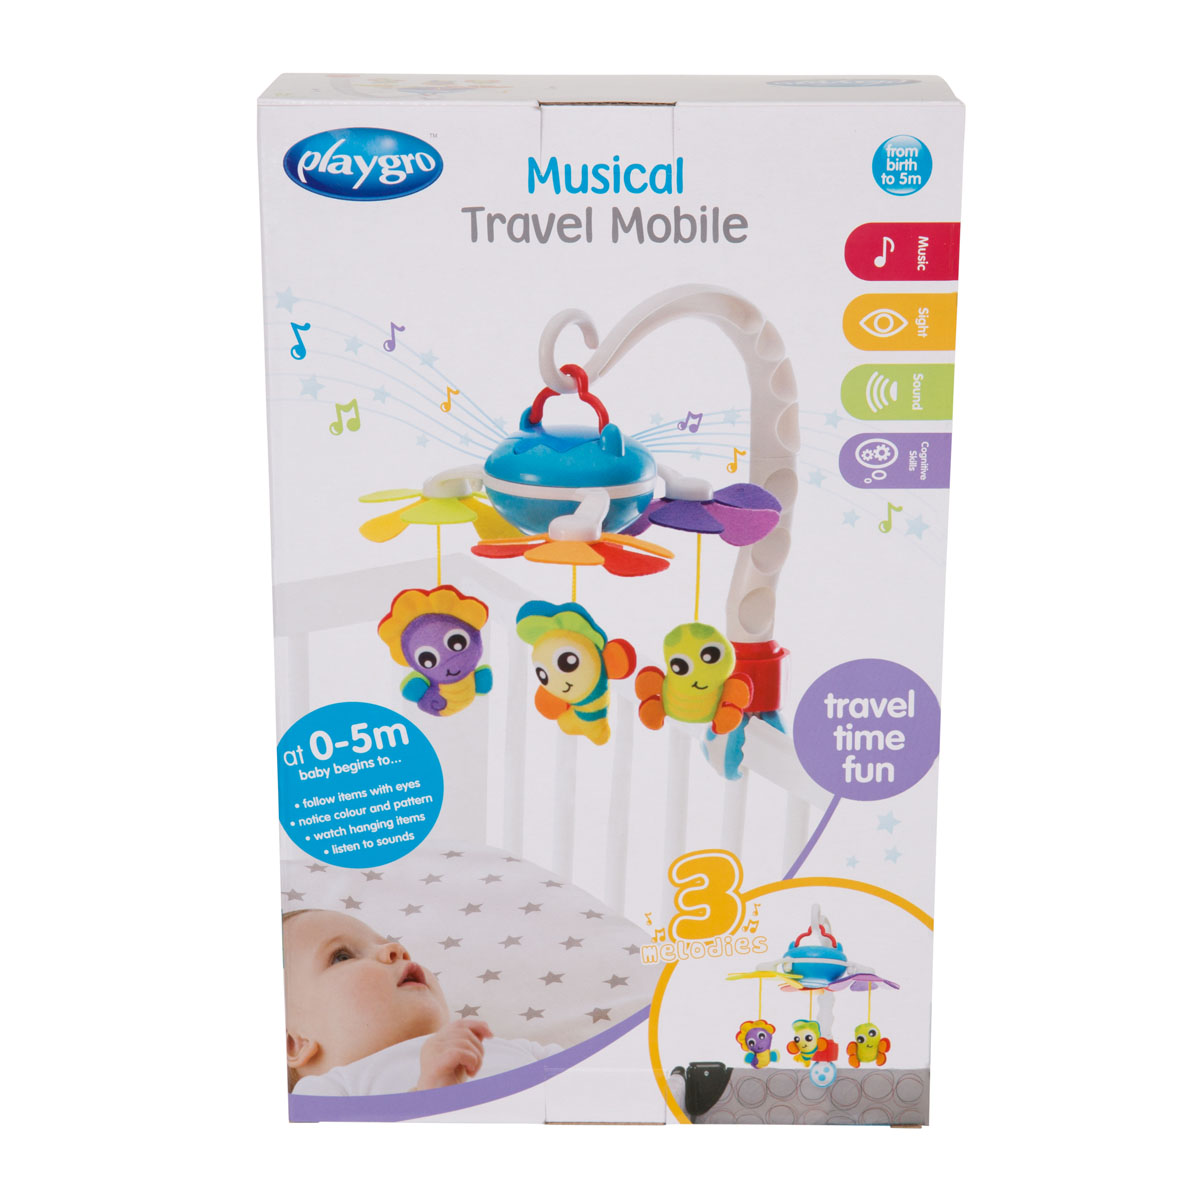 Đồ chơi treo nôi và xe đẩy phát nhạc Playgro Musical Travel Mobile, cho bé sơ sinh đến 5 tháng